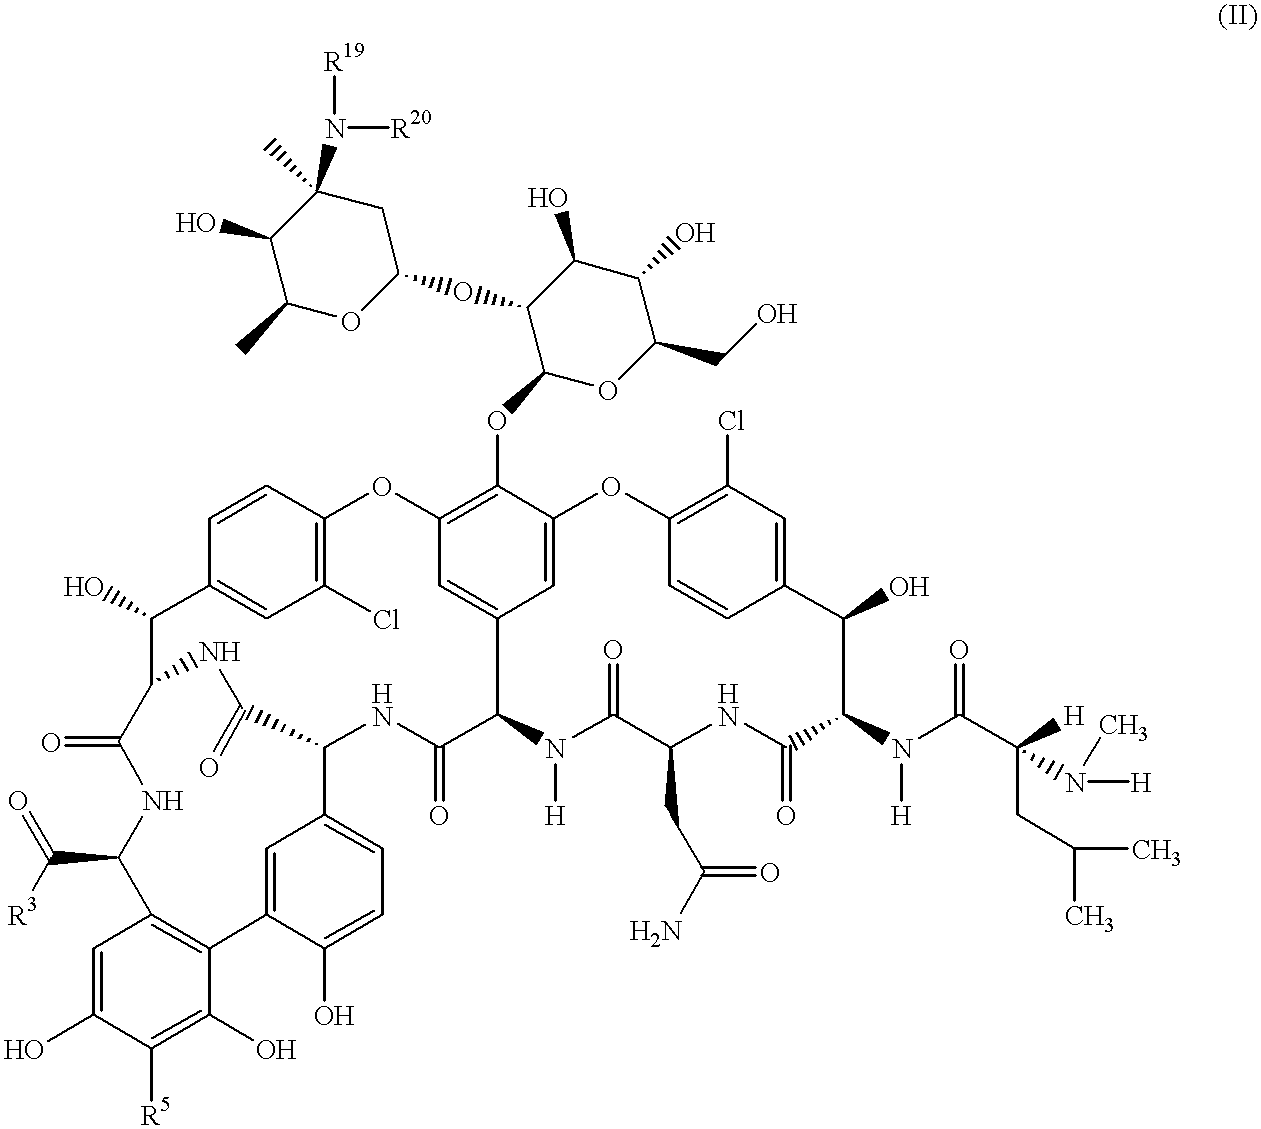 Polyhudroxy glycopeptide derivatives